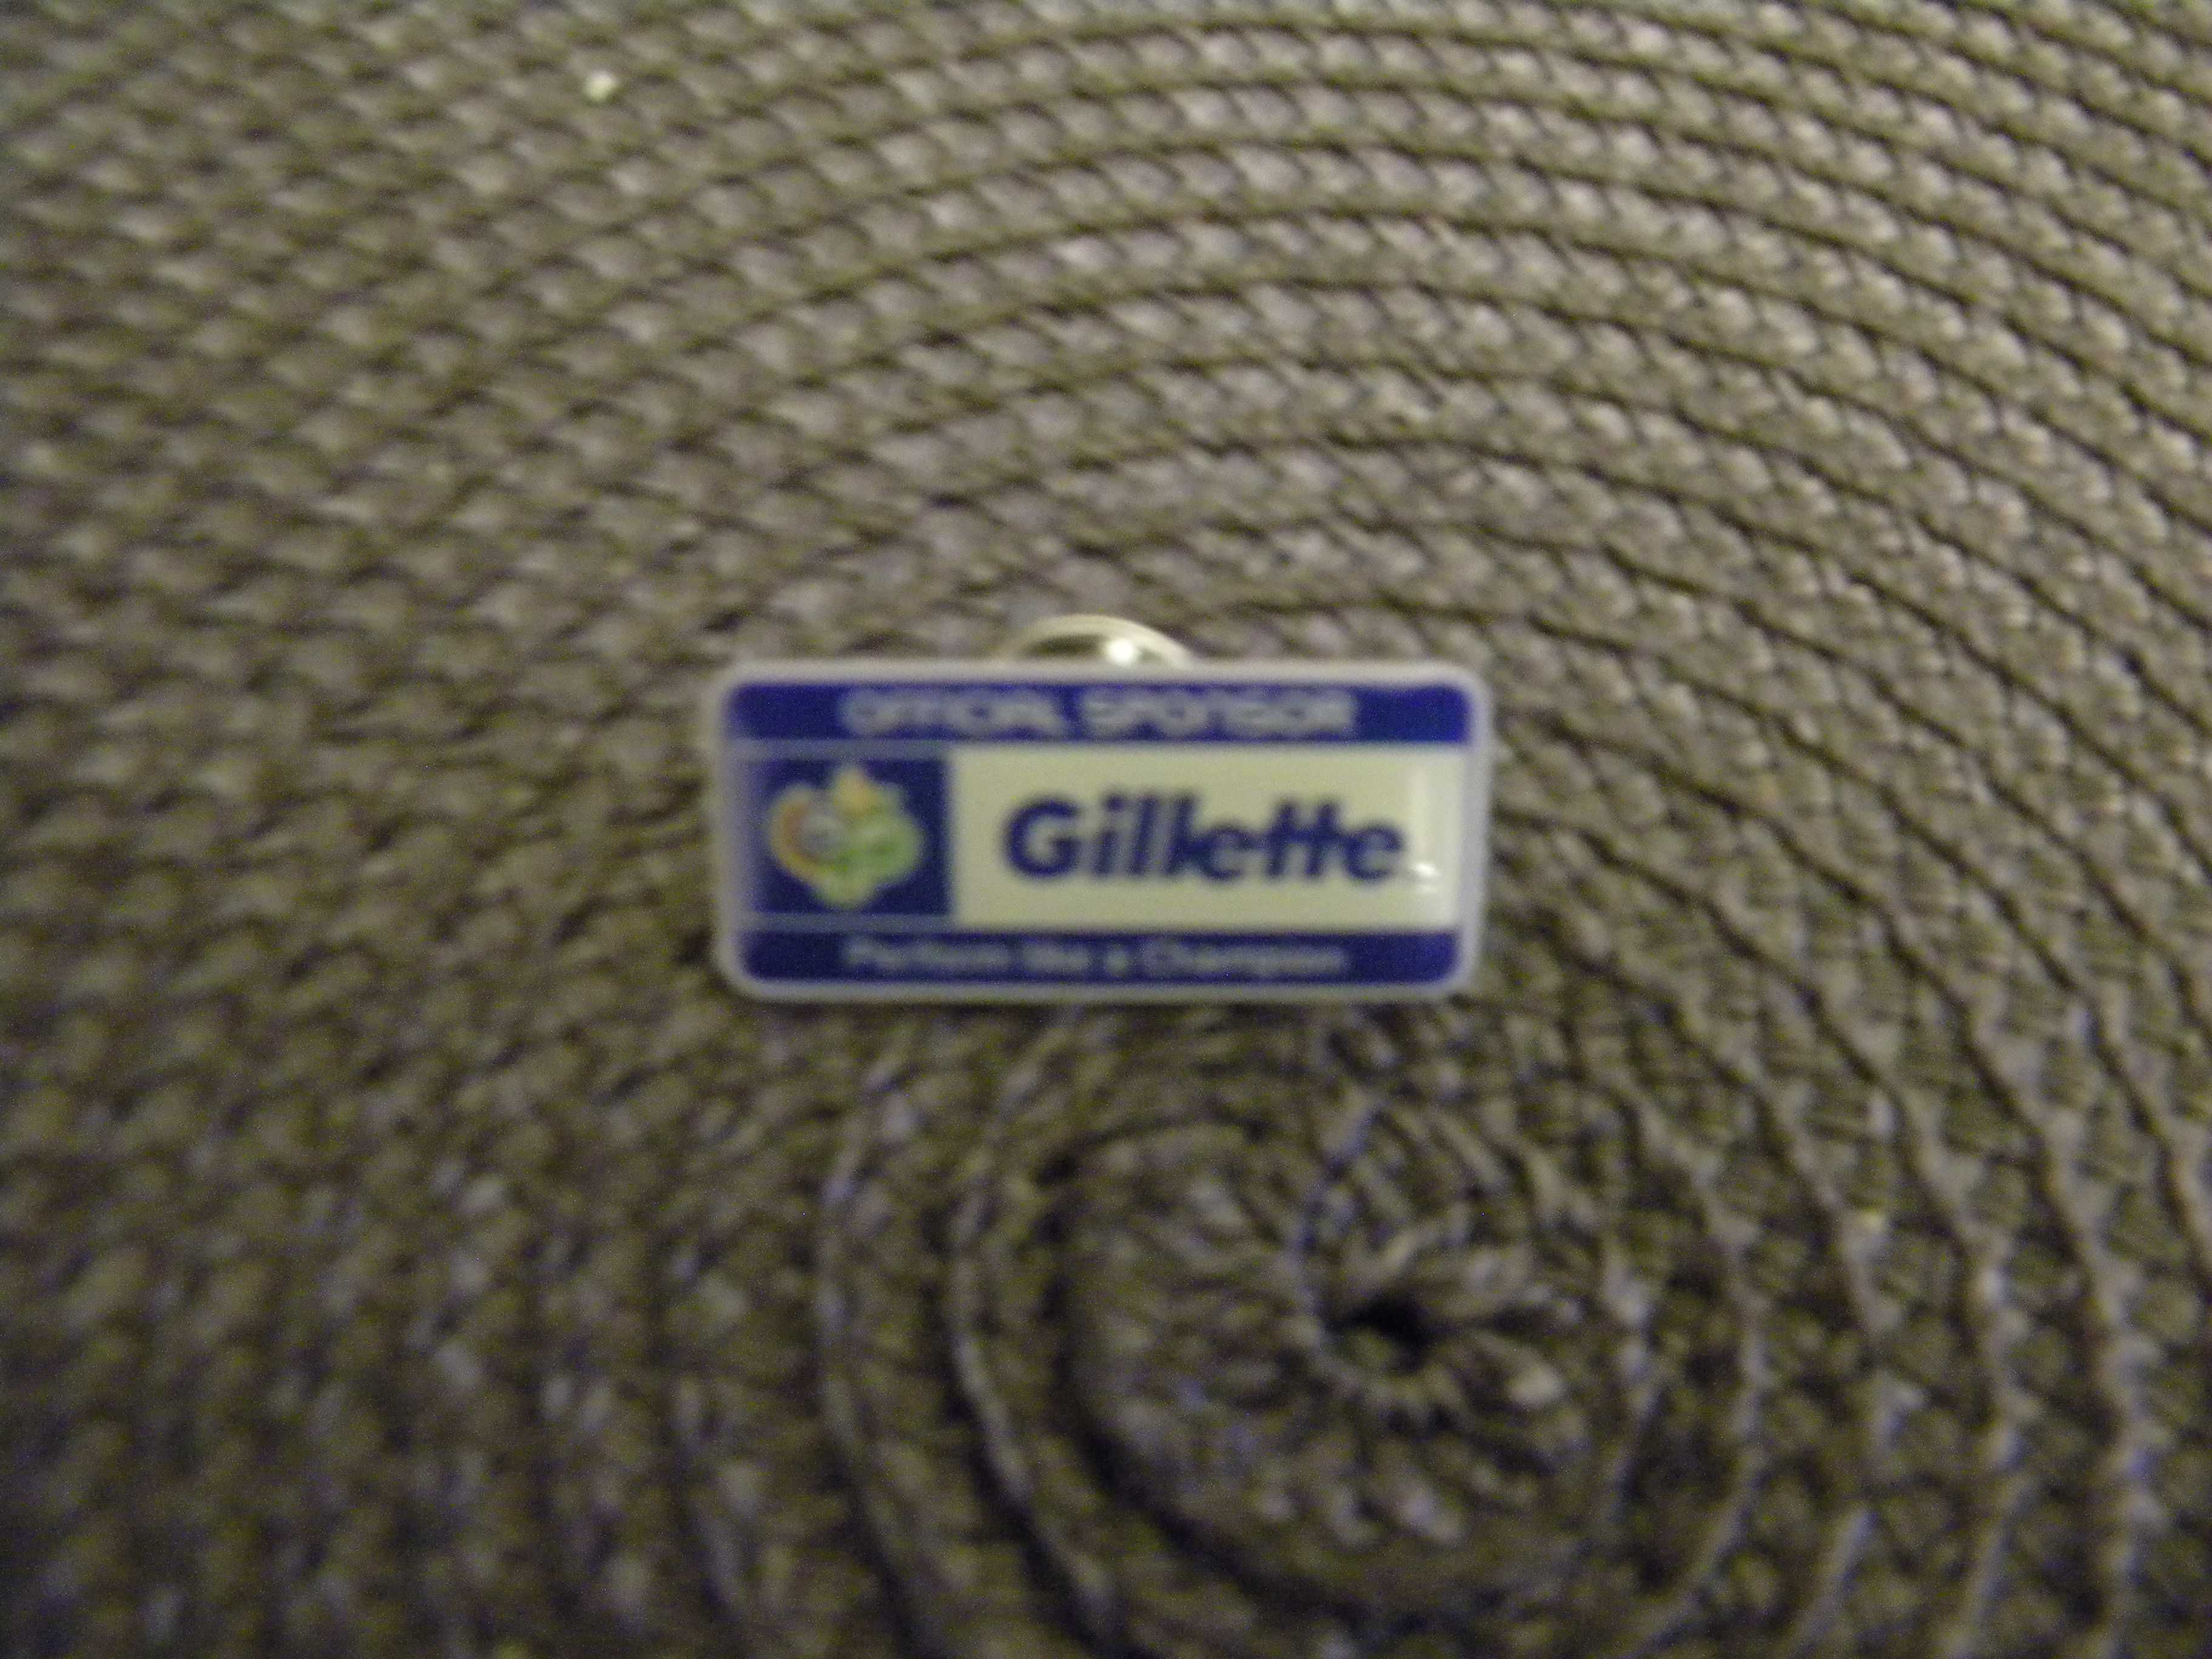 Przywieszka Gillette metalowa